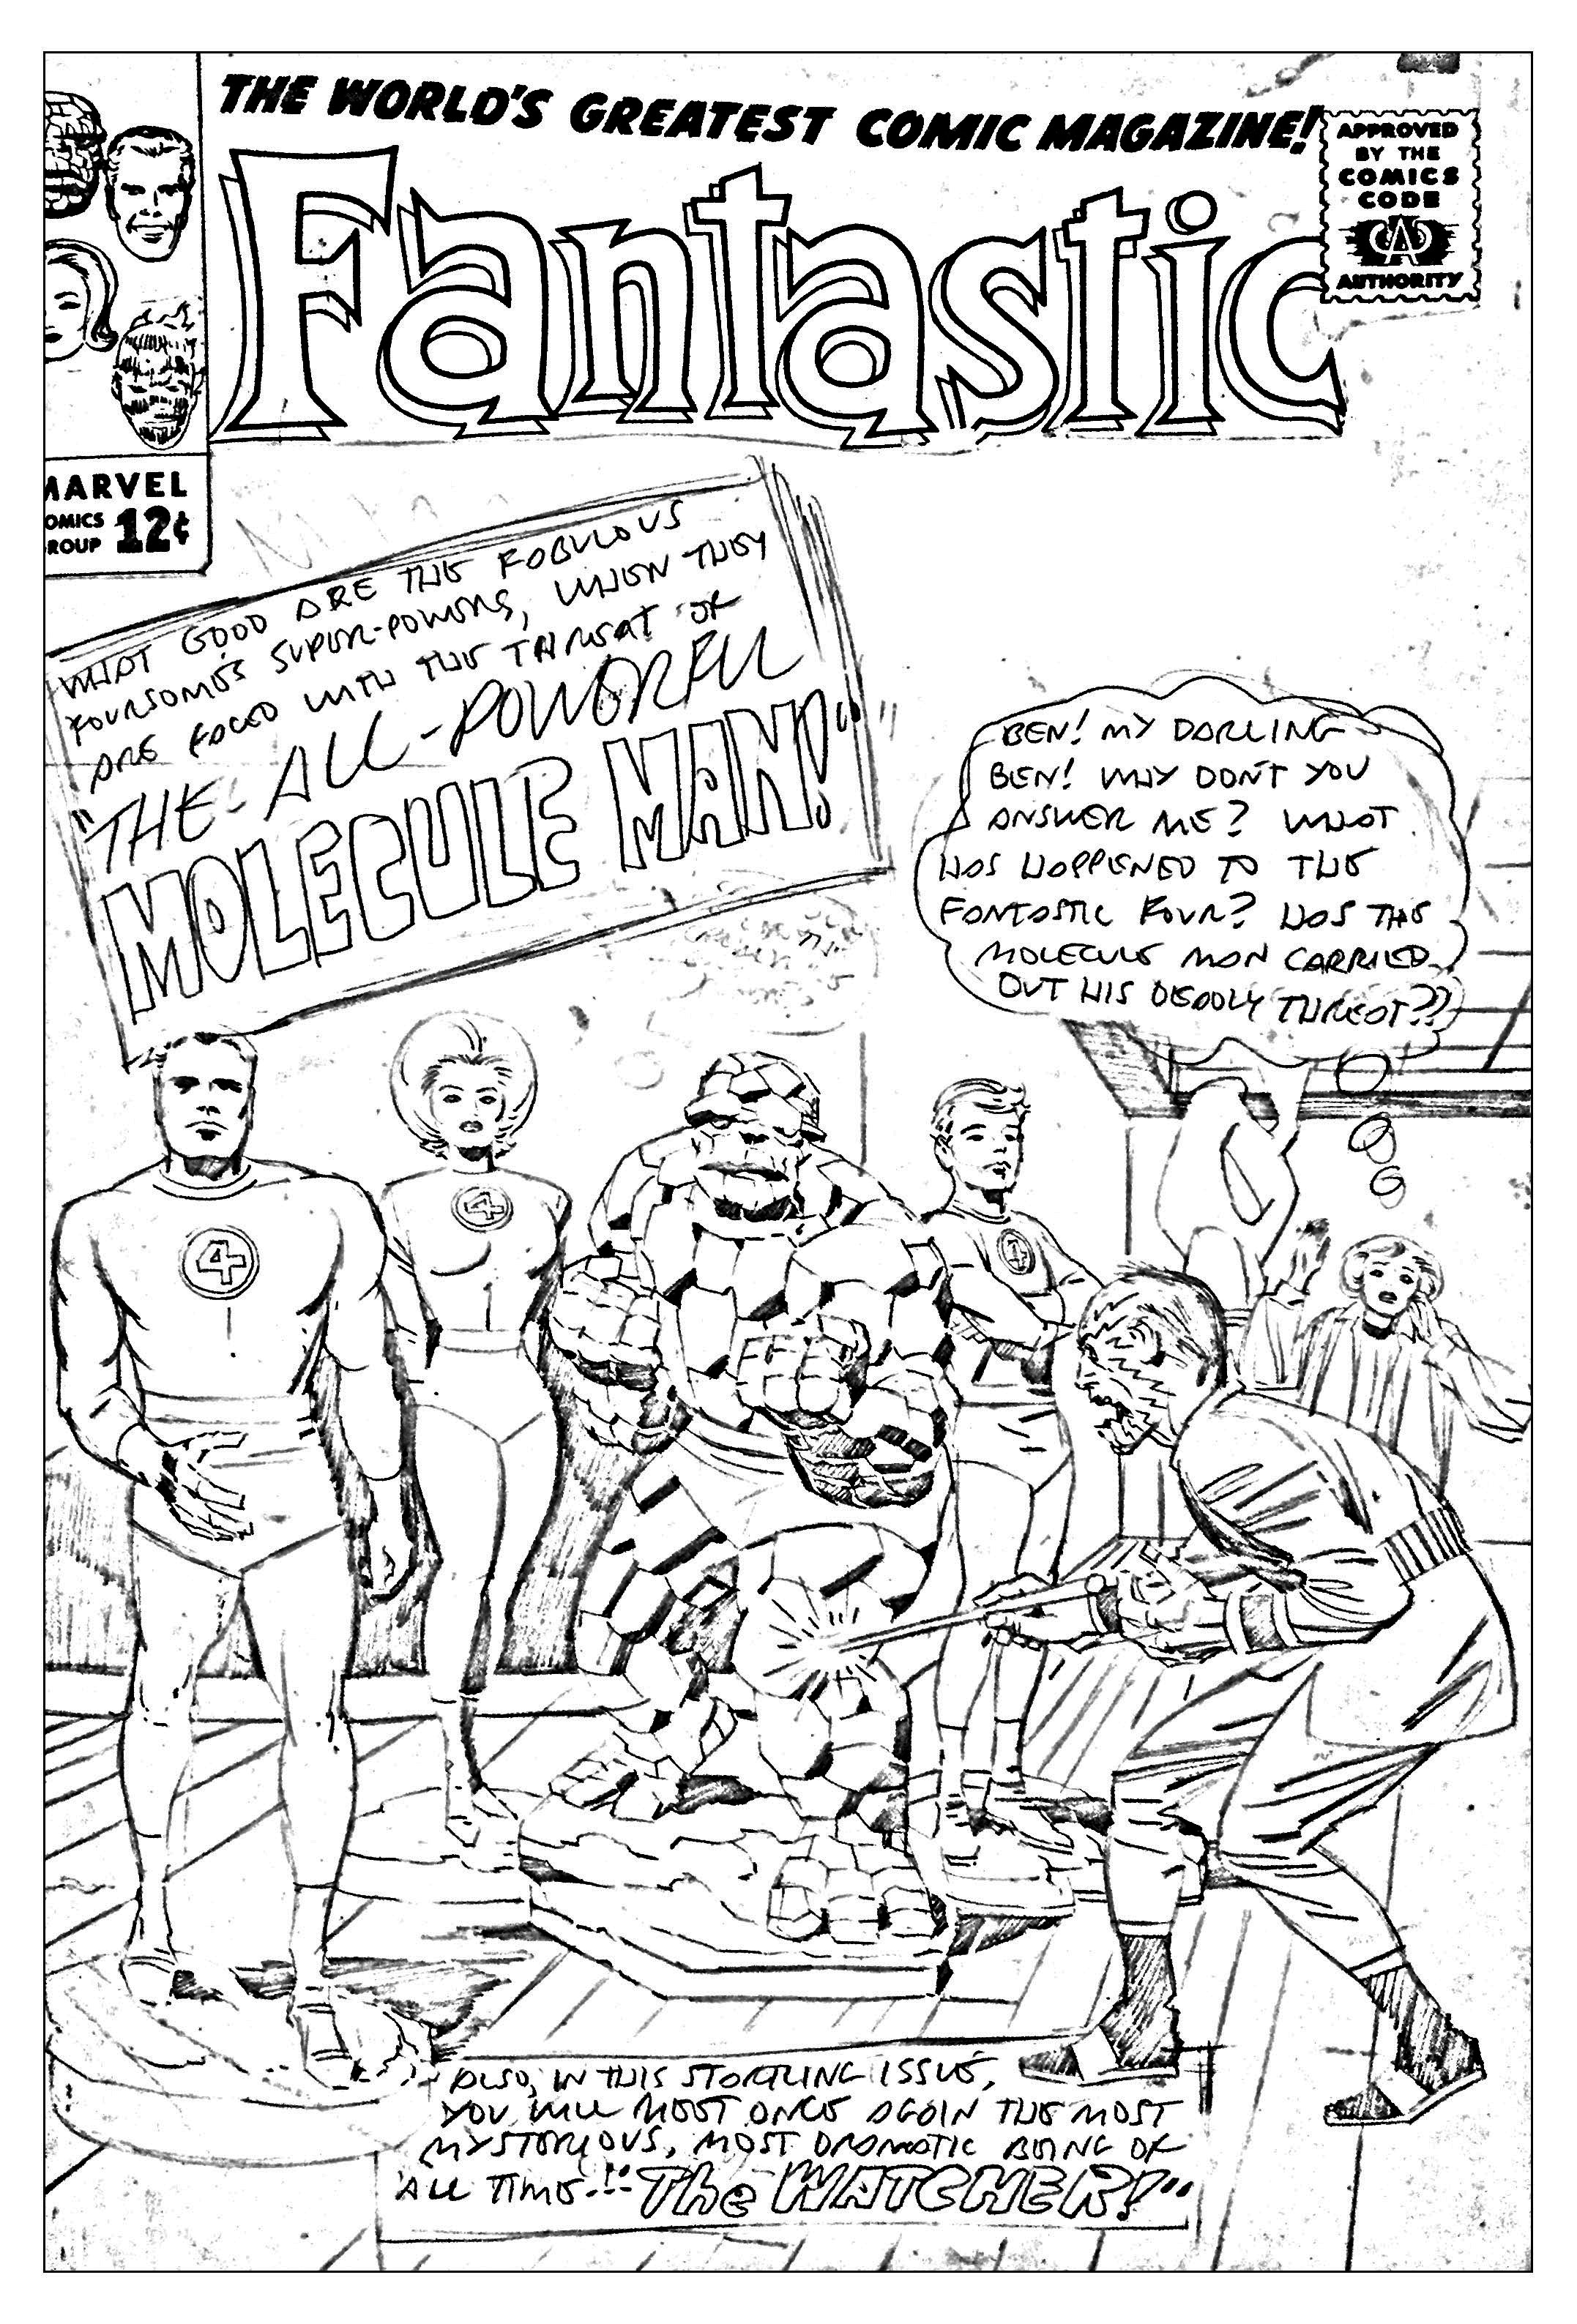 Coloriage créé à partir d'une couverture inétide et inachevée réalisée pour les Quatre Fantastiques en 1963 (Source : Jack Kirby, King of comics)